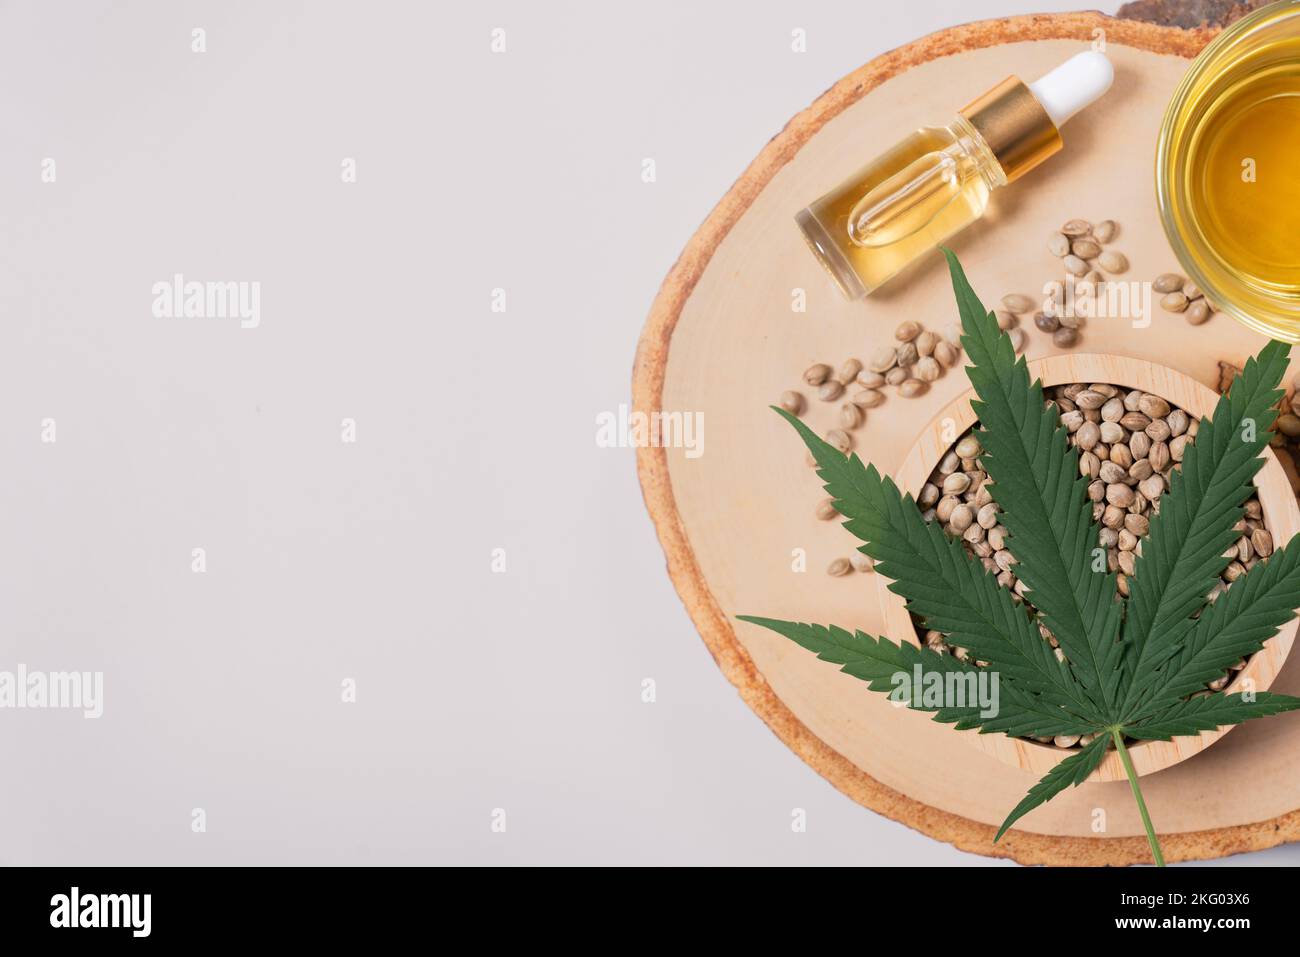 Le lot de marijuana légalisée comprend une feuille de chanvre vert, de l'huile de CBD dans une bouteille avec un couvercle compte-gouttes et un bol en verre, et des graines de chanvre exposées sur un bois Banque D'Images